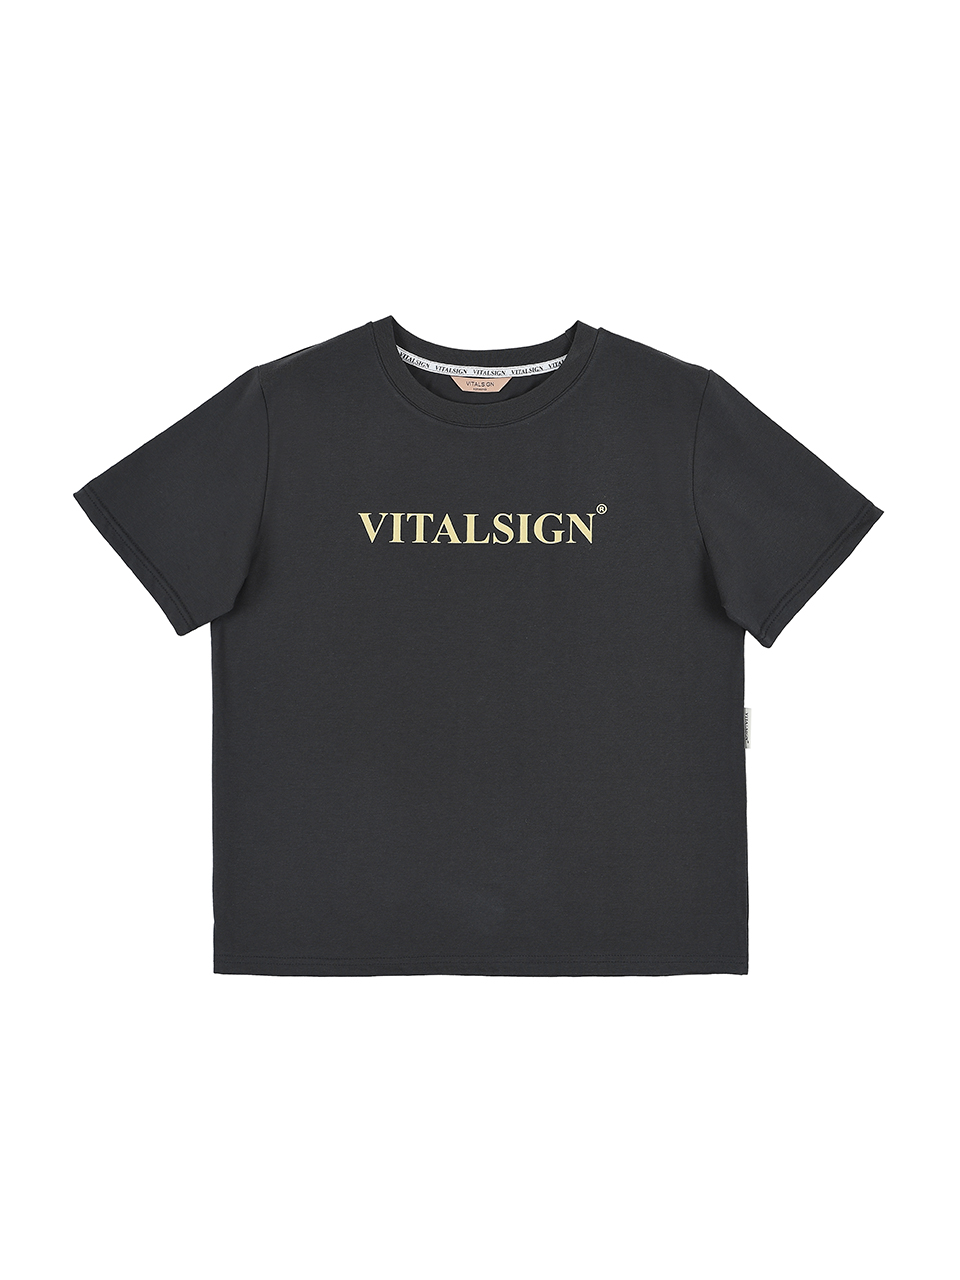 Vitalsign Signature T-shirt (Charcoal)